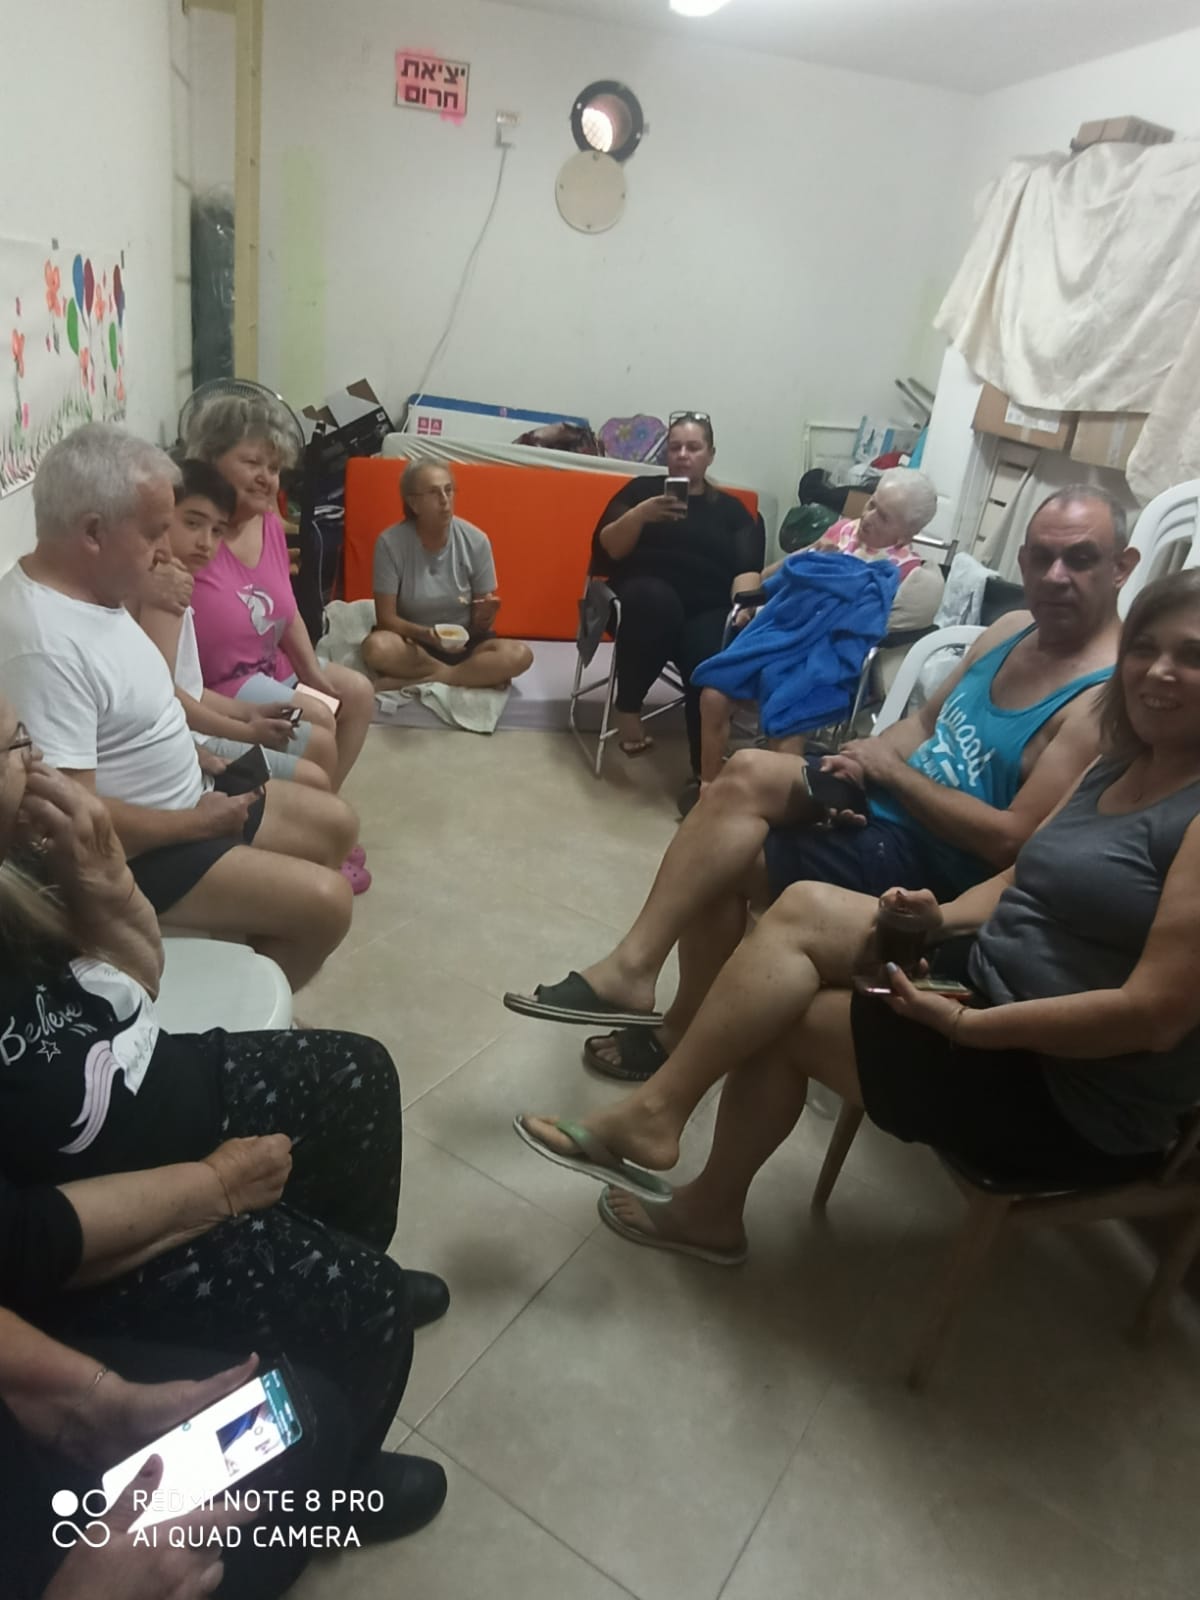 Muita gente no interior das cidades alvo em Israel está passando dias dentro dos abrigos antifoguetes-